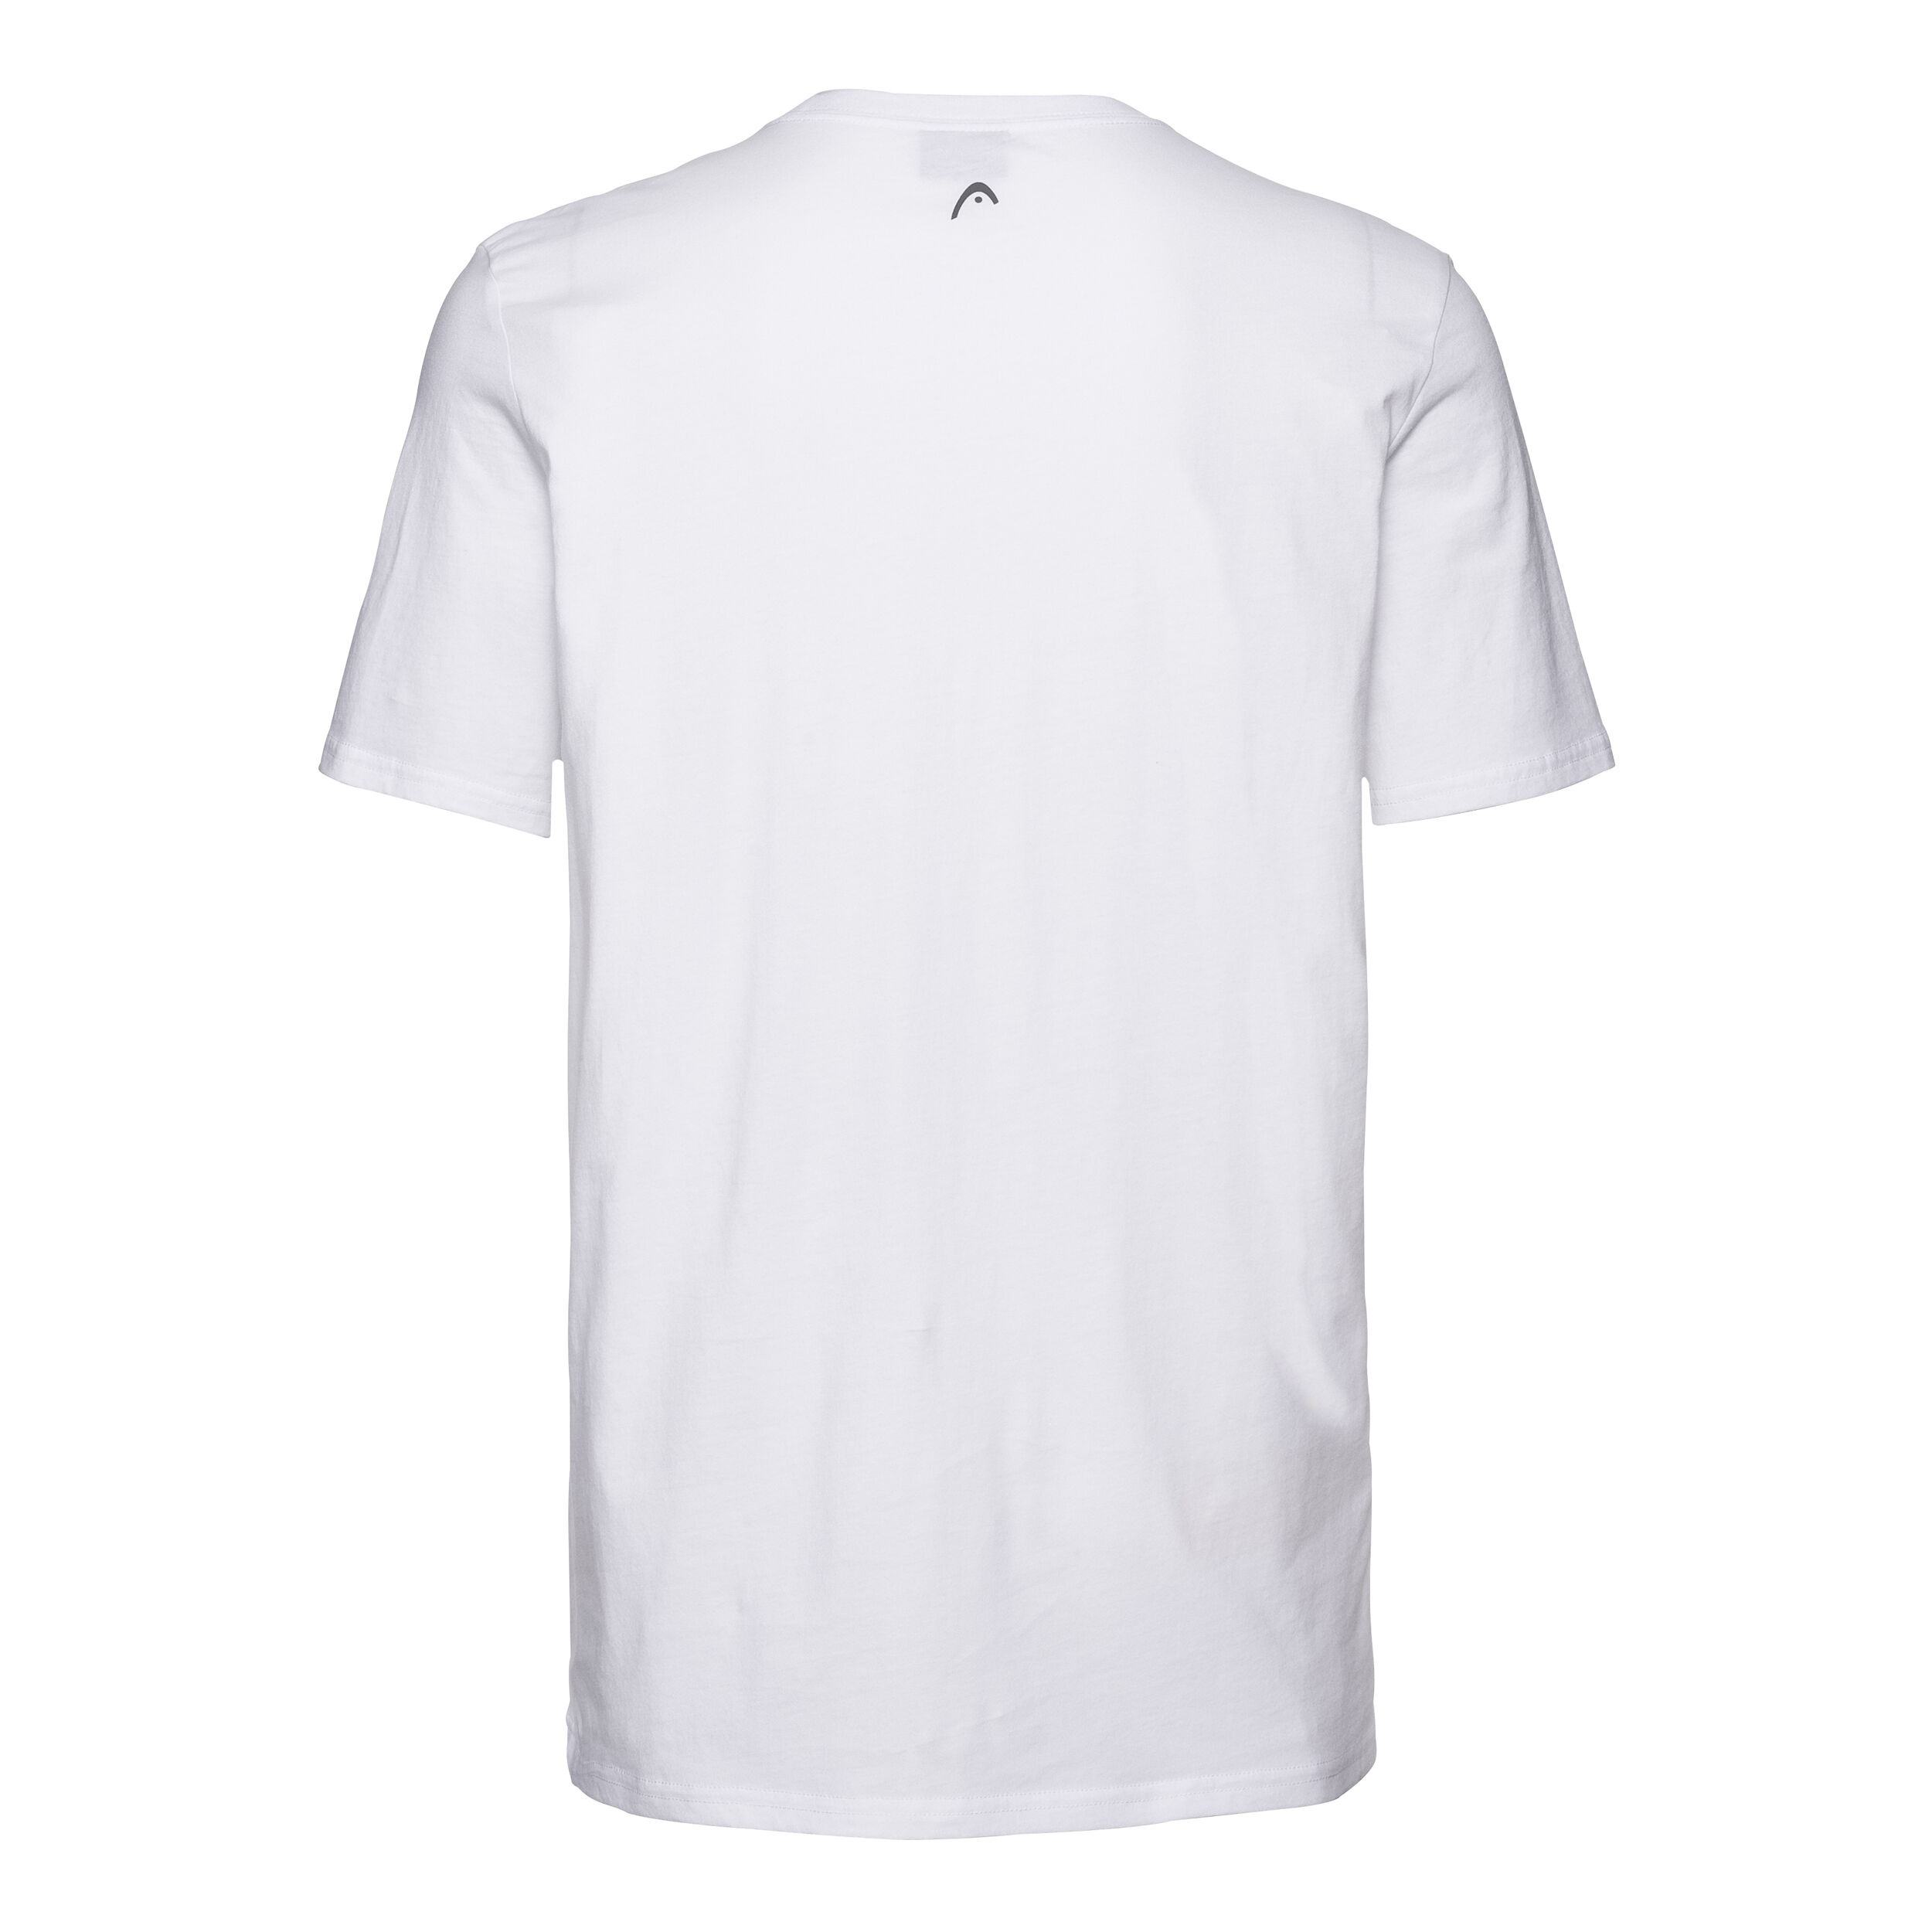 Head Club Ivan T-Shirt M Camiseta Hombre